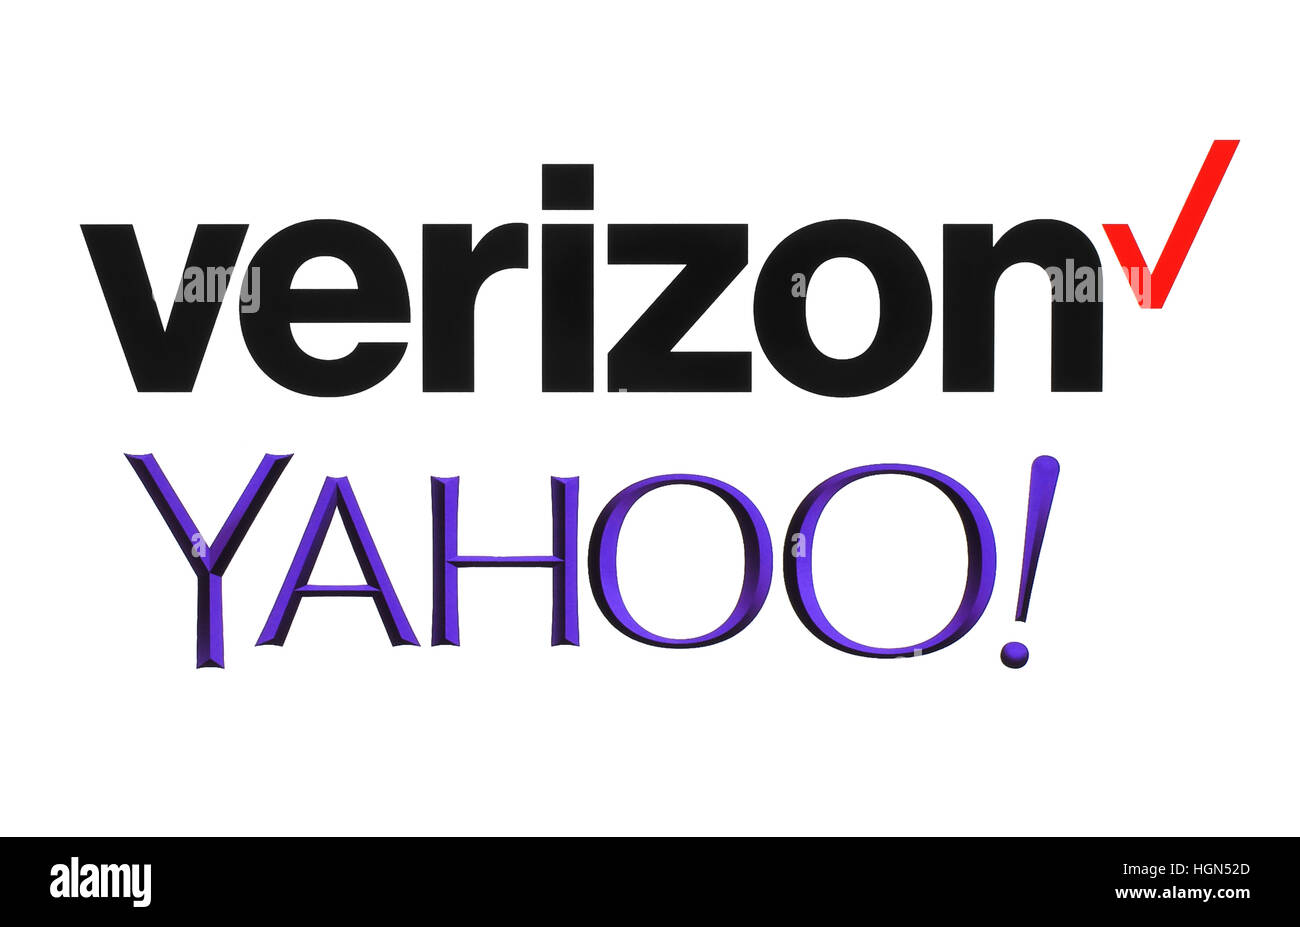 Kiev, Ukraine - le 26 septembre 2016 : Yahoo et Verizon Communications logos imprimés sur papier blanc. Verizon Communications est un nouveau propriétaire de Yahoo serv Banque D'Images